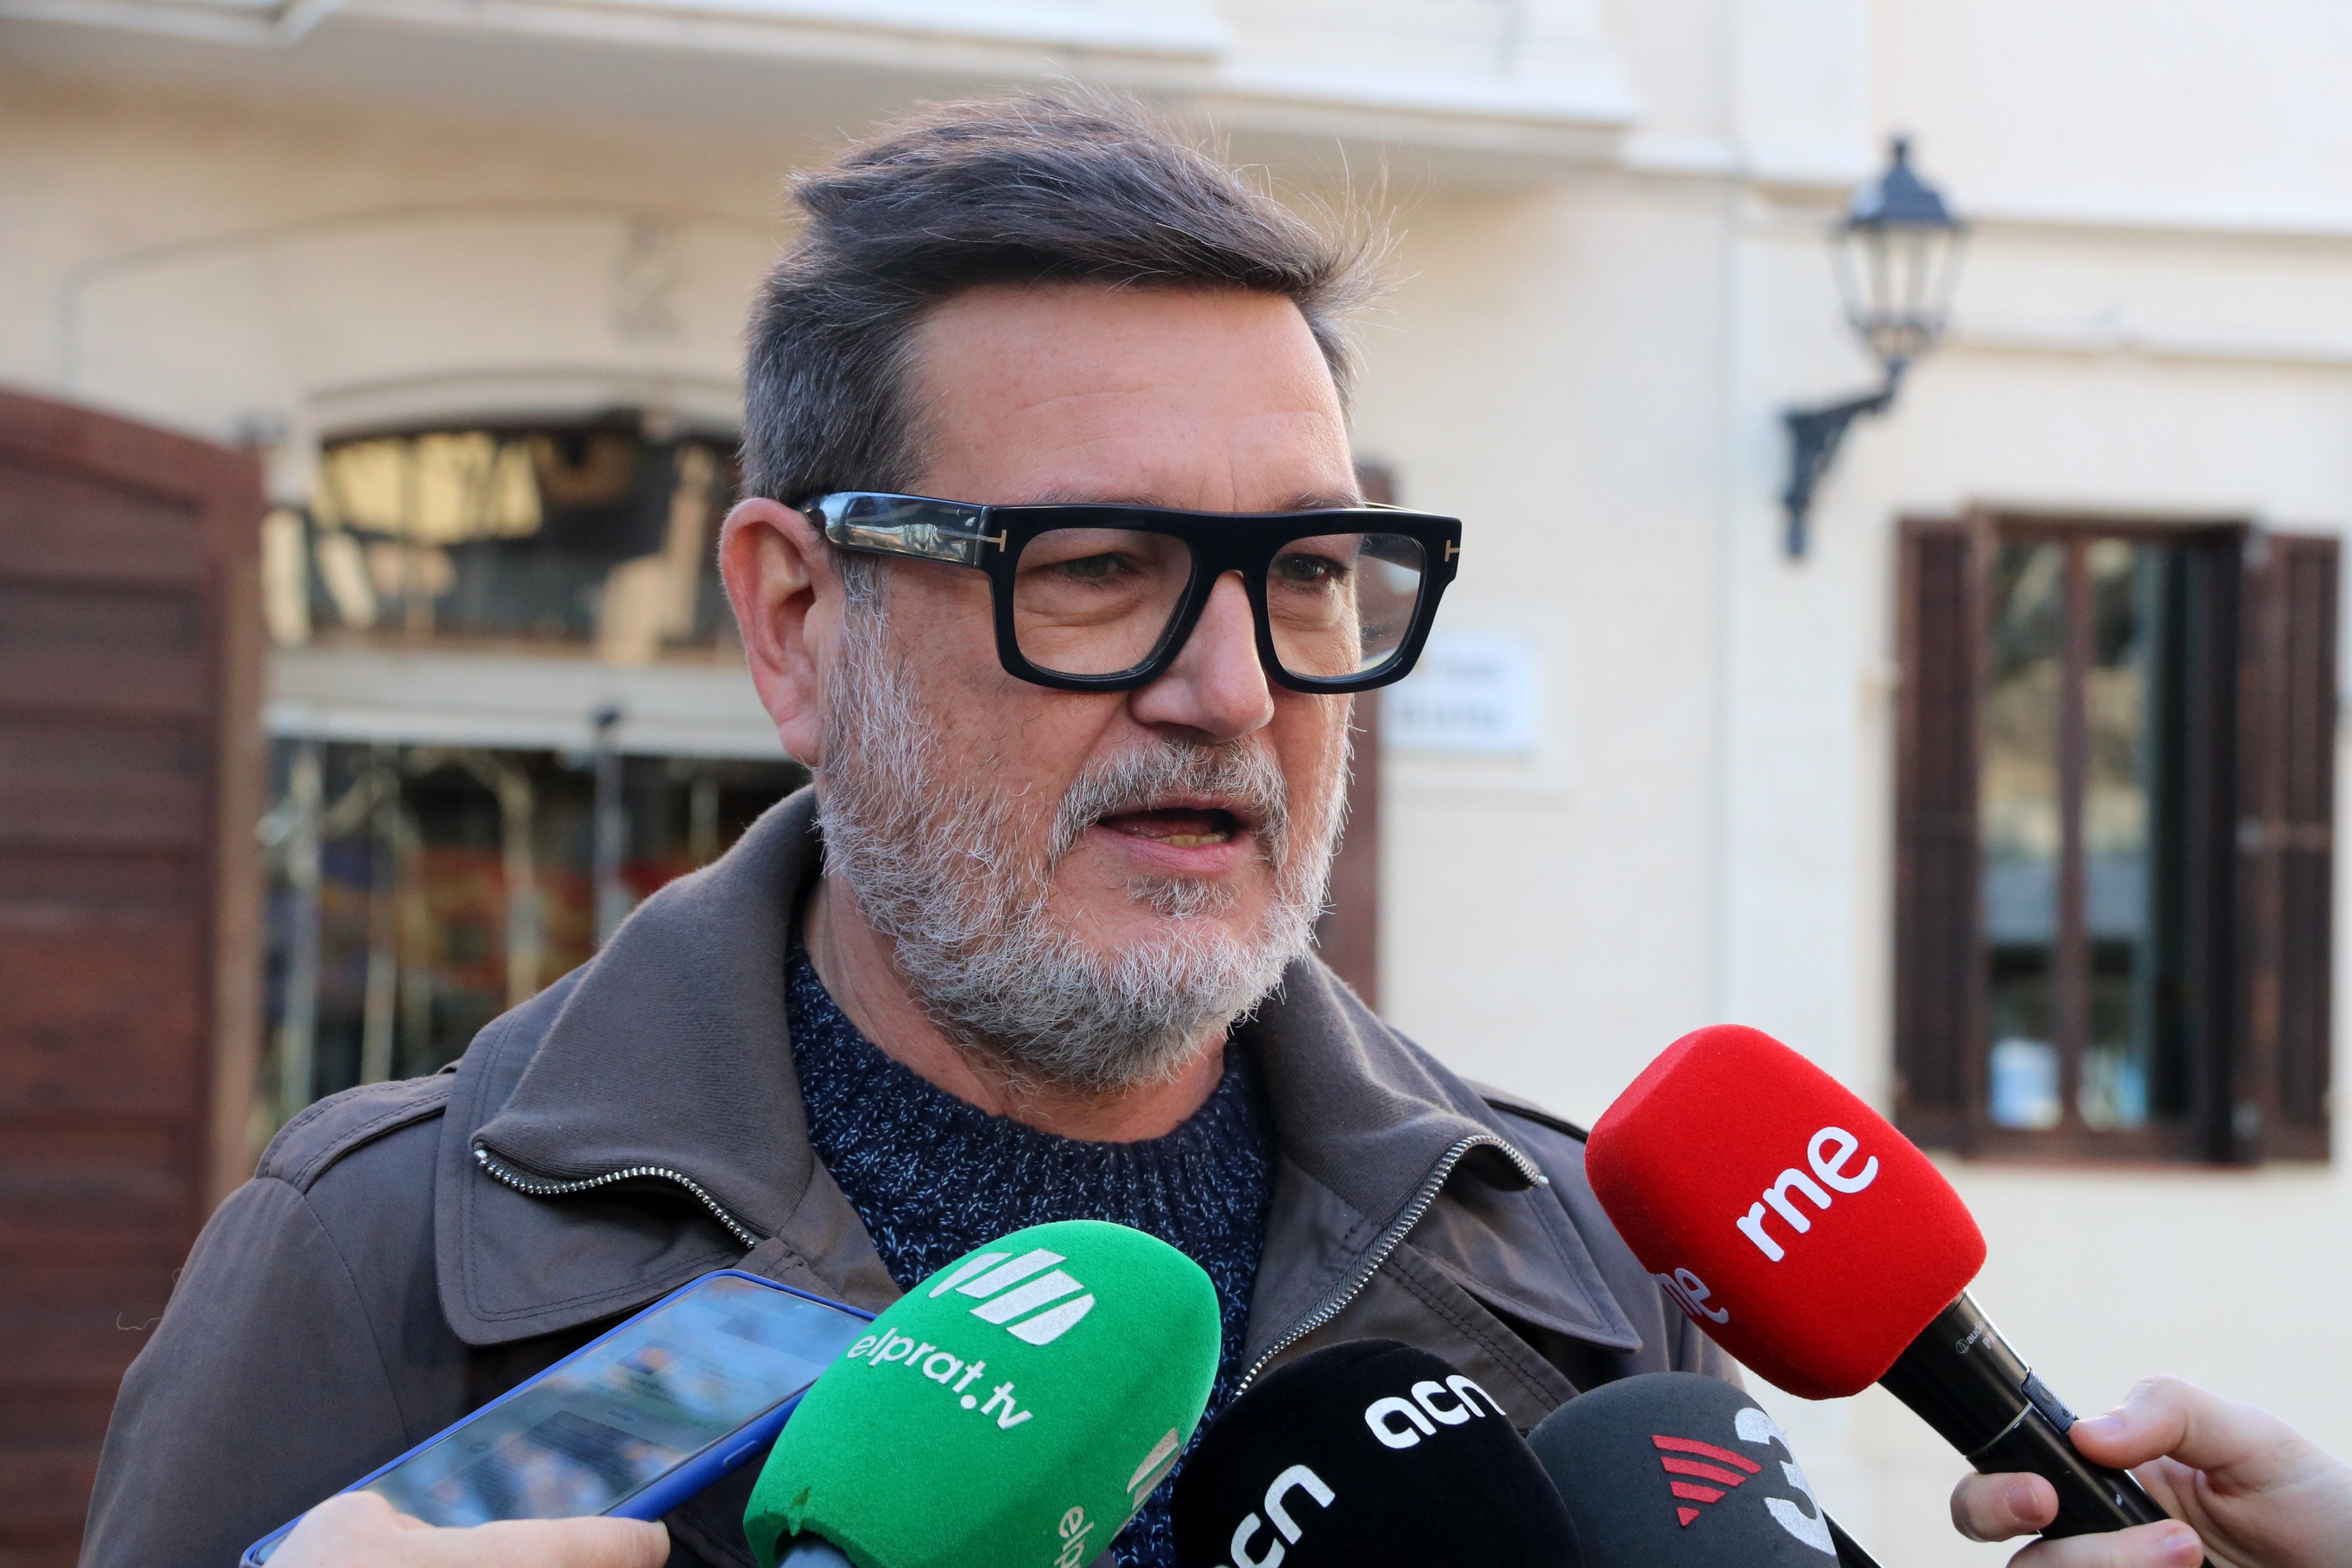 L'alcalde del Prat celebra els pressupostos: "L'ampliació depredadora de l'aeroport no es farà"